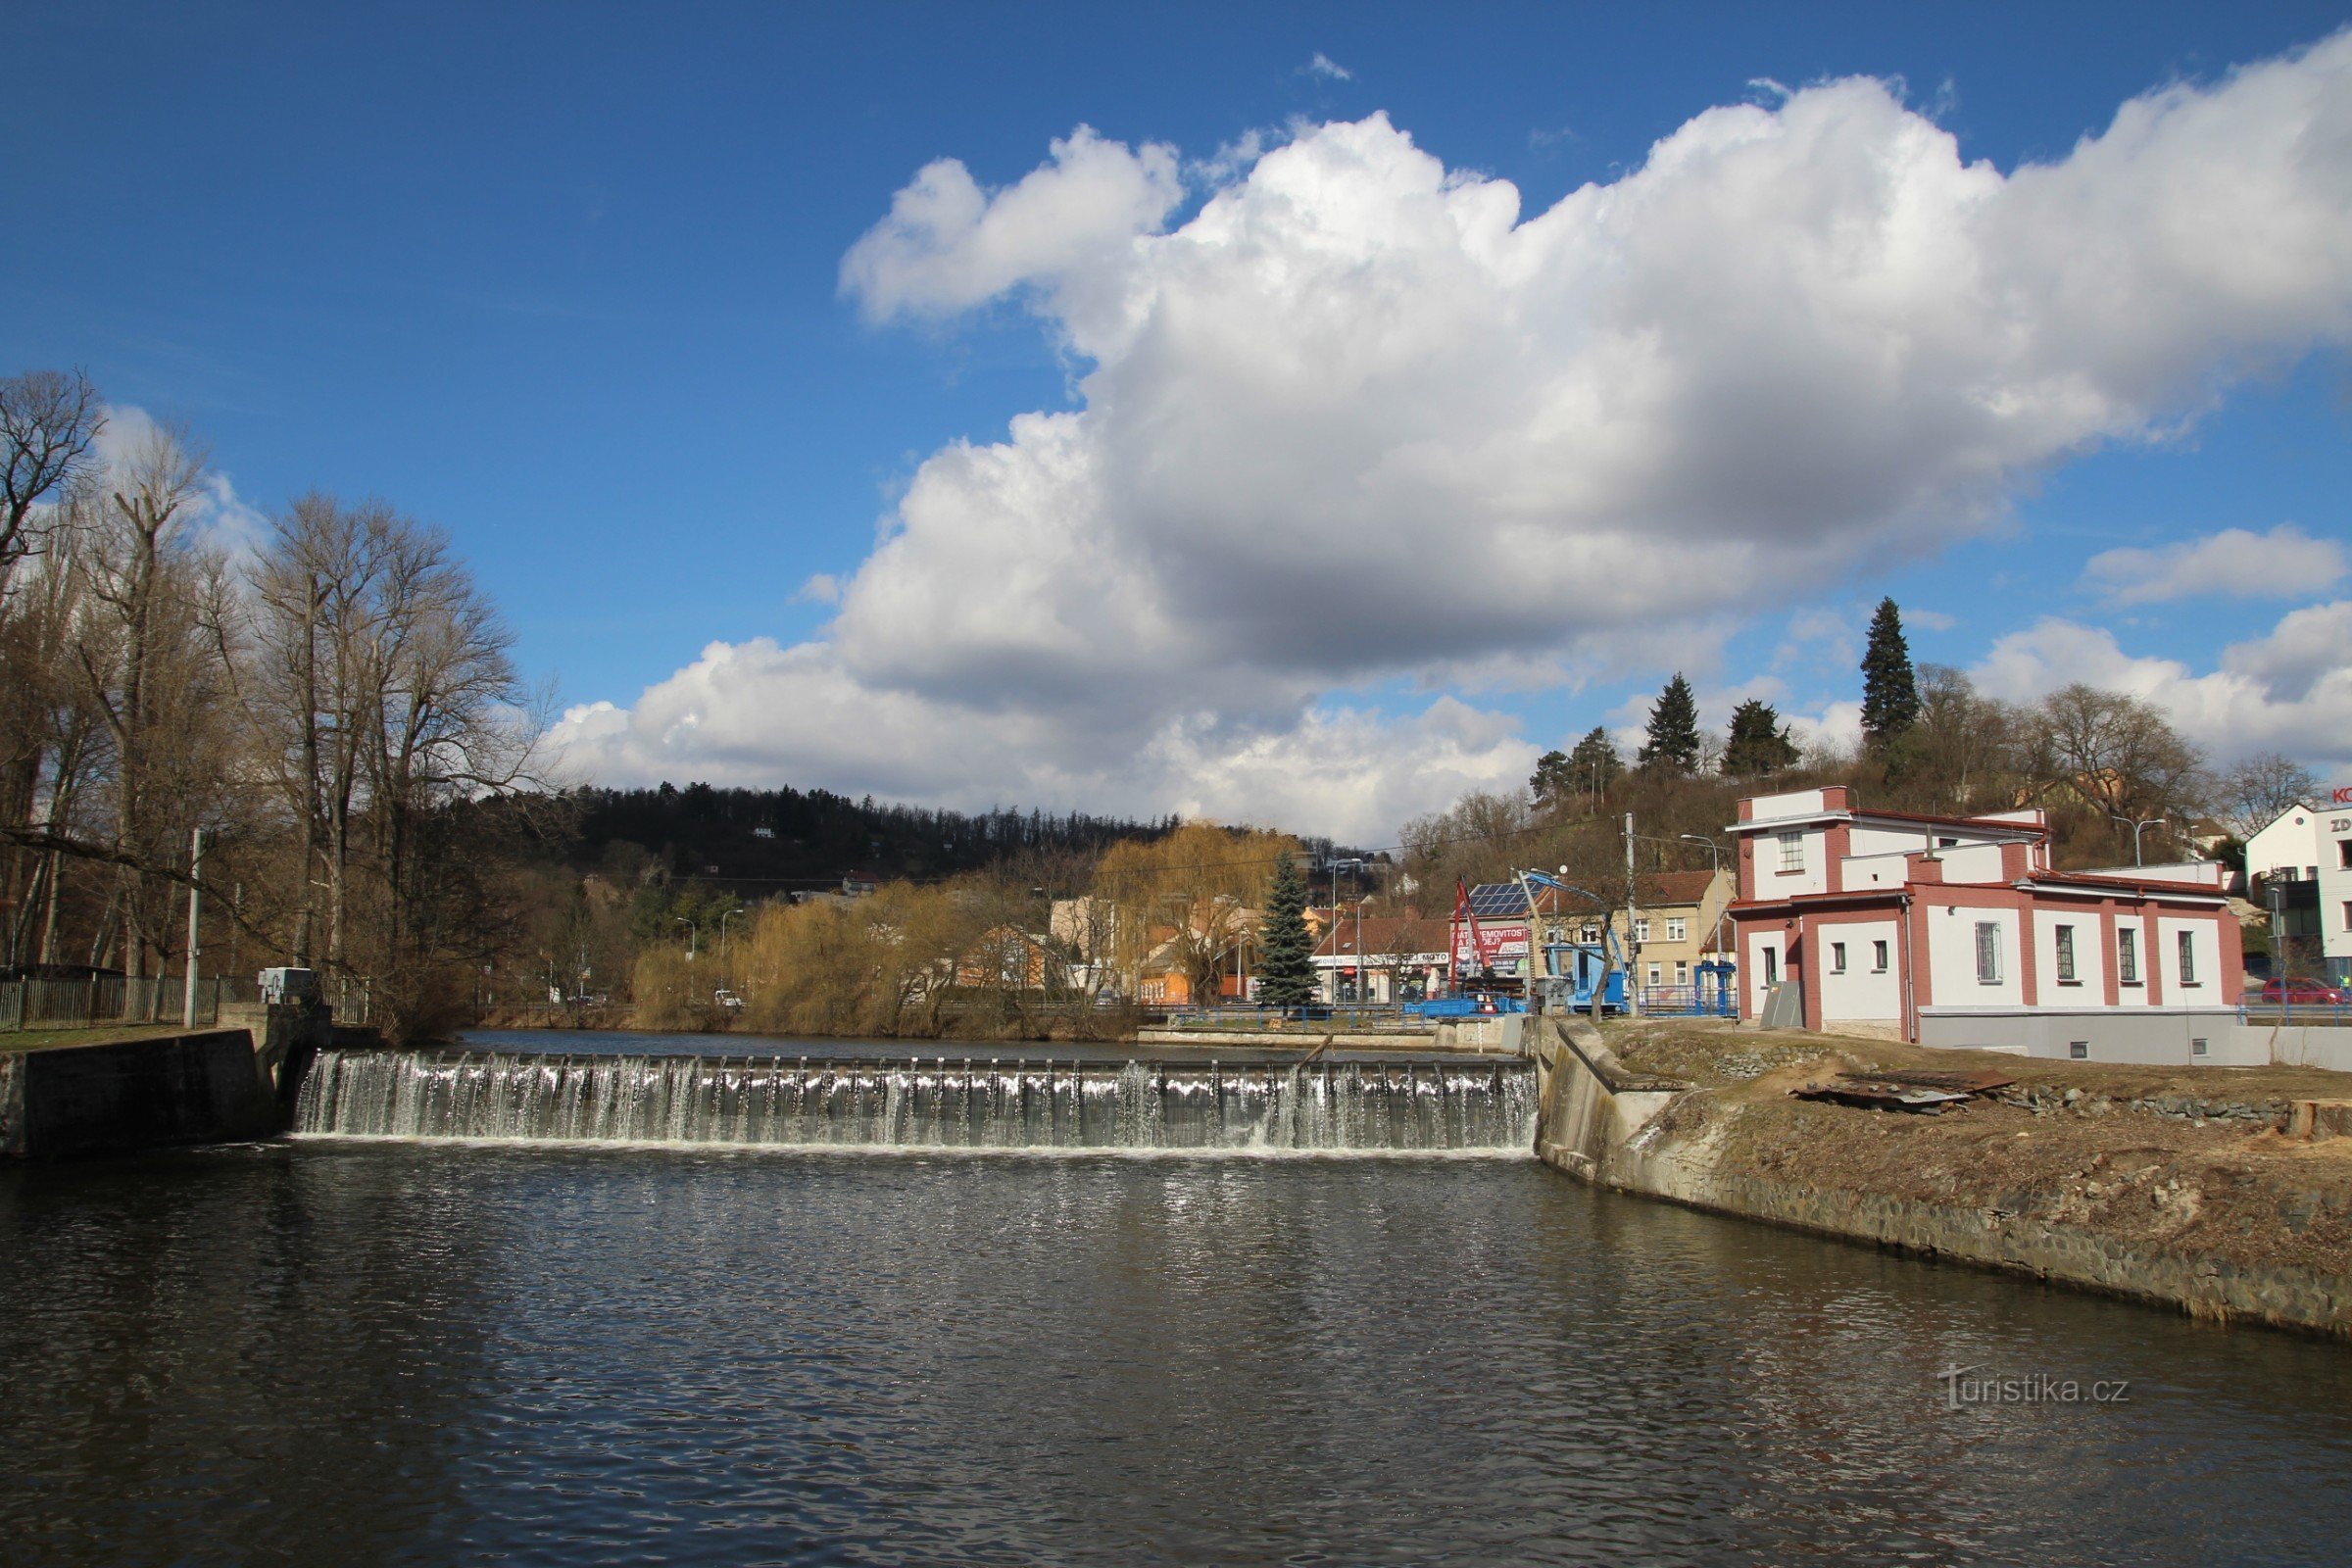 Komín dam on the river Svratka